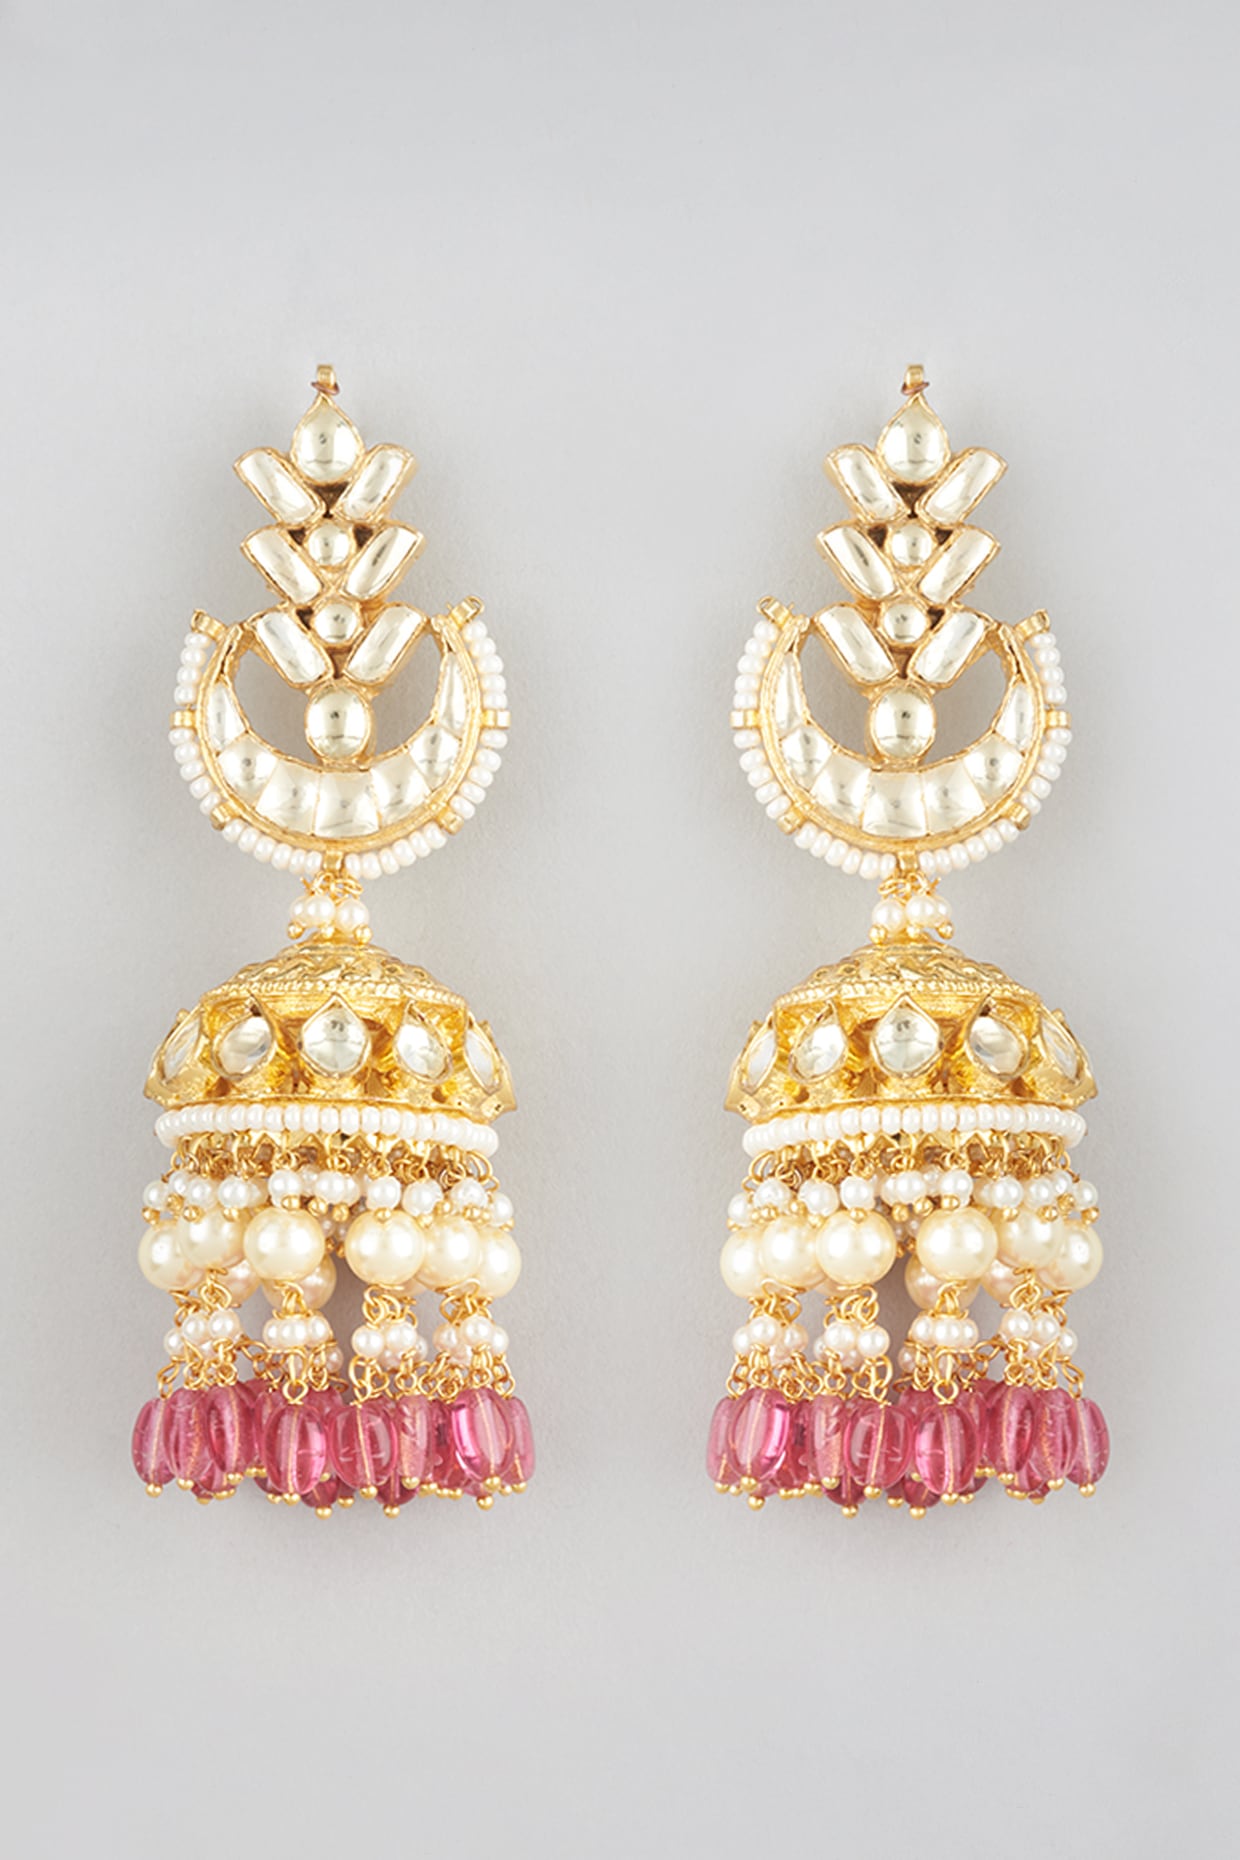 Ari Heart Rose Gold Drop Earrings in Pink Drusy | Kendra Scott